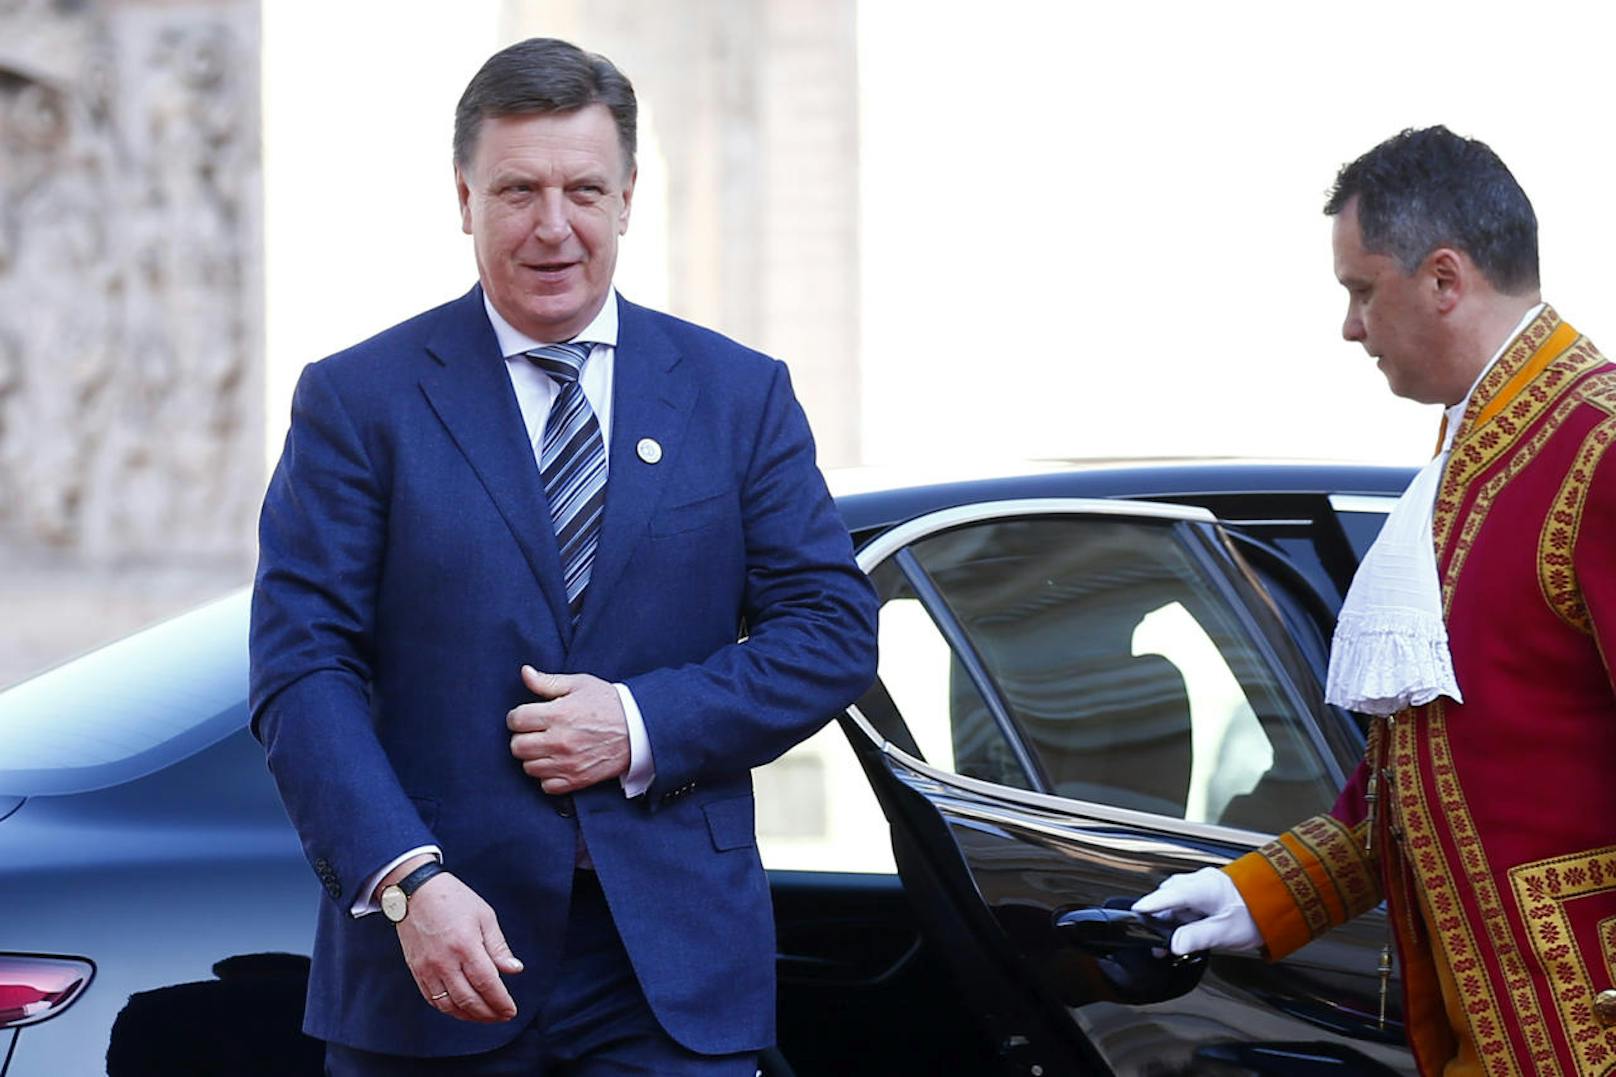 <b>Oktober 2018: Parlamentswahl in Lettland</b>
Im Oktober wählen die Letten ein neues Parlament. Der derzeitige Premier Maris Kucinskis ist hier im Bild bei einem Treffen der EU-Regierungschefs in Rom zu sehen.